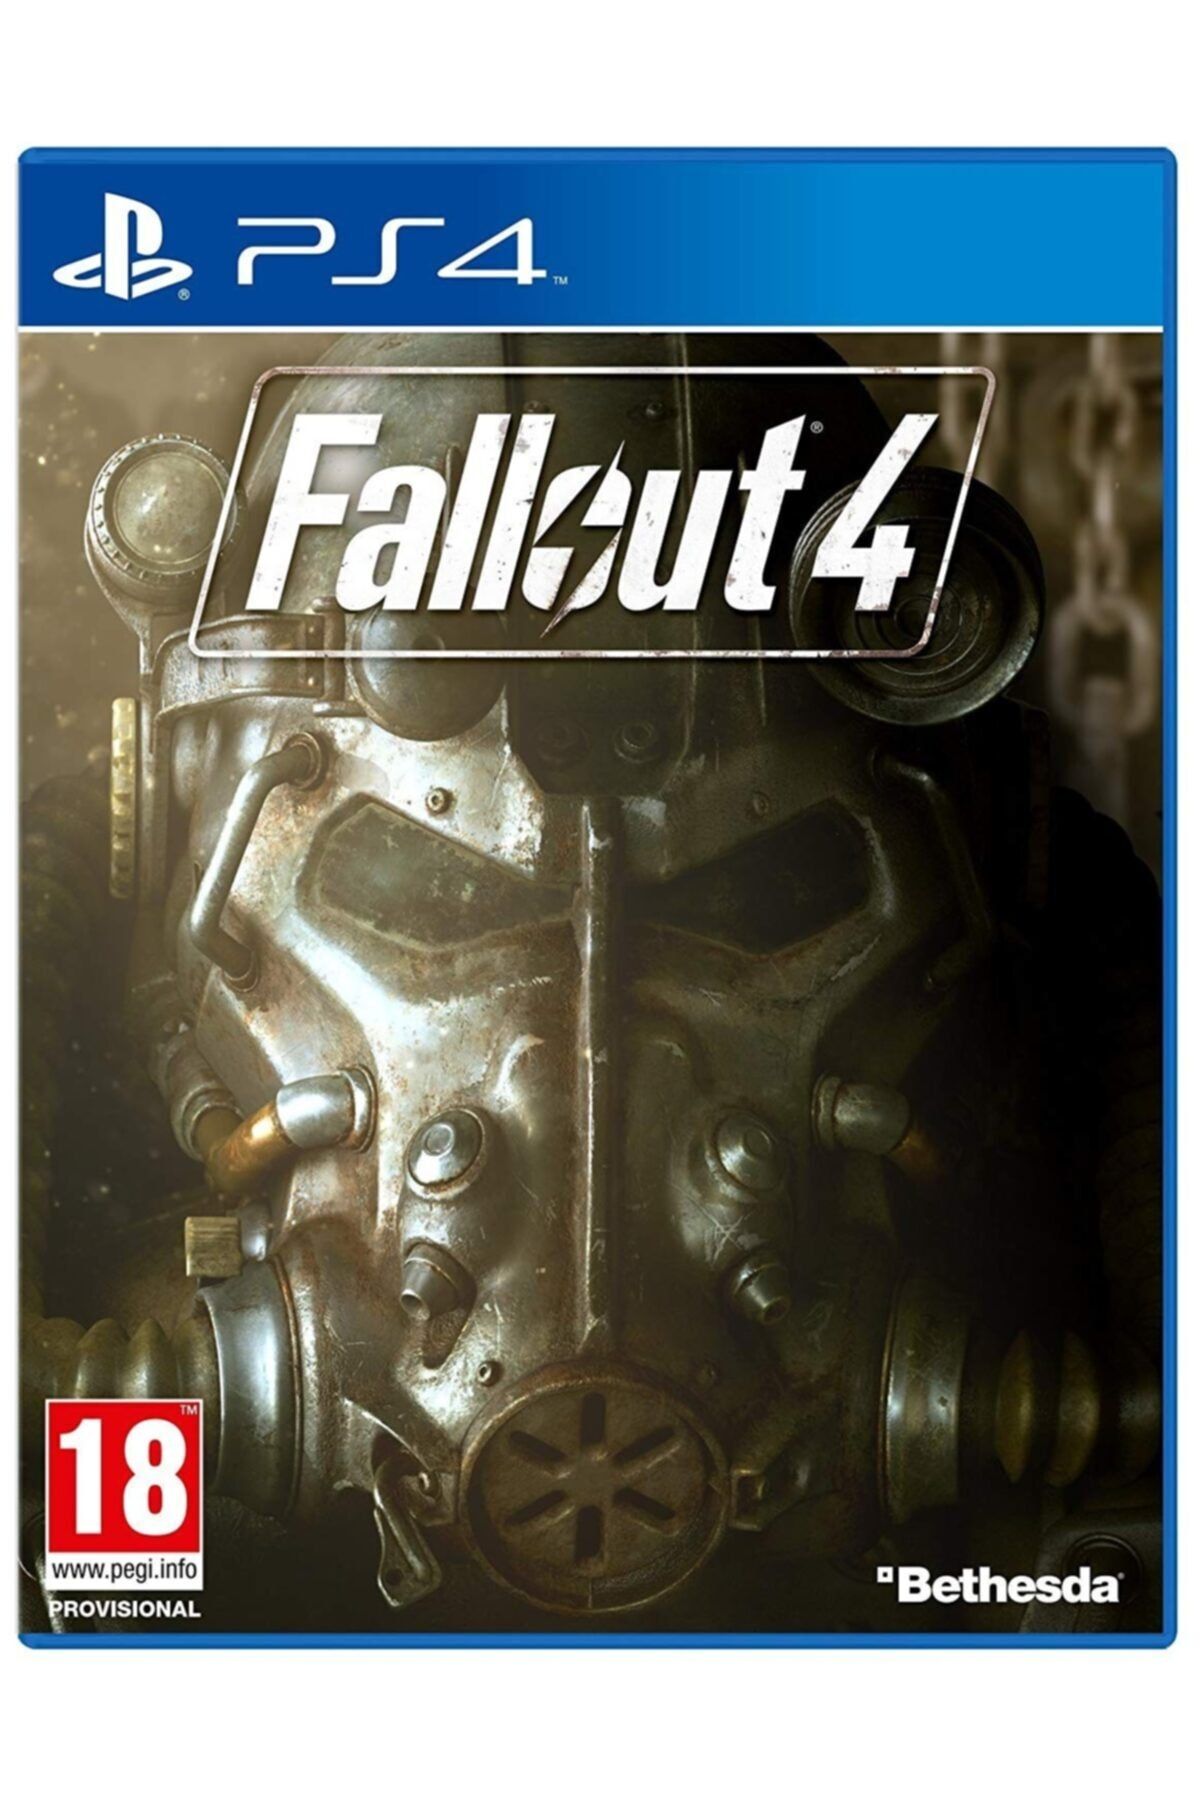 BETHESDA Ps4 Fallout 4 - Orjinal Oyun - Sıfır Jelatin